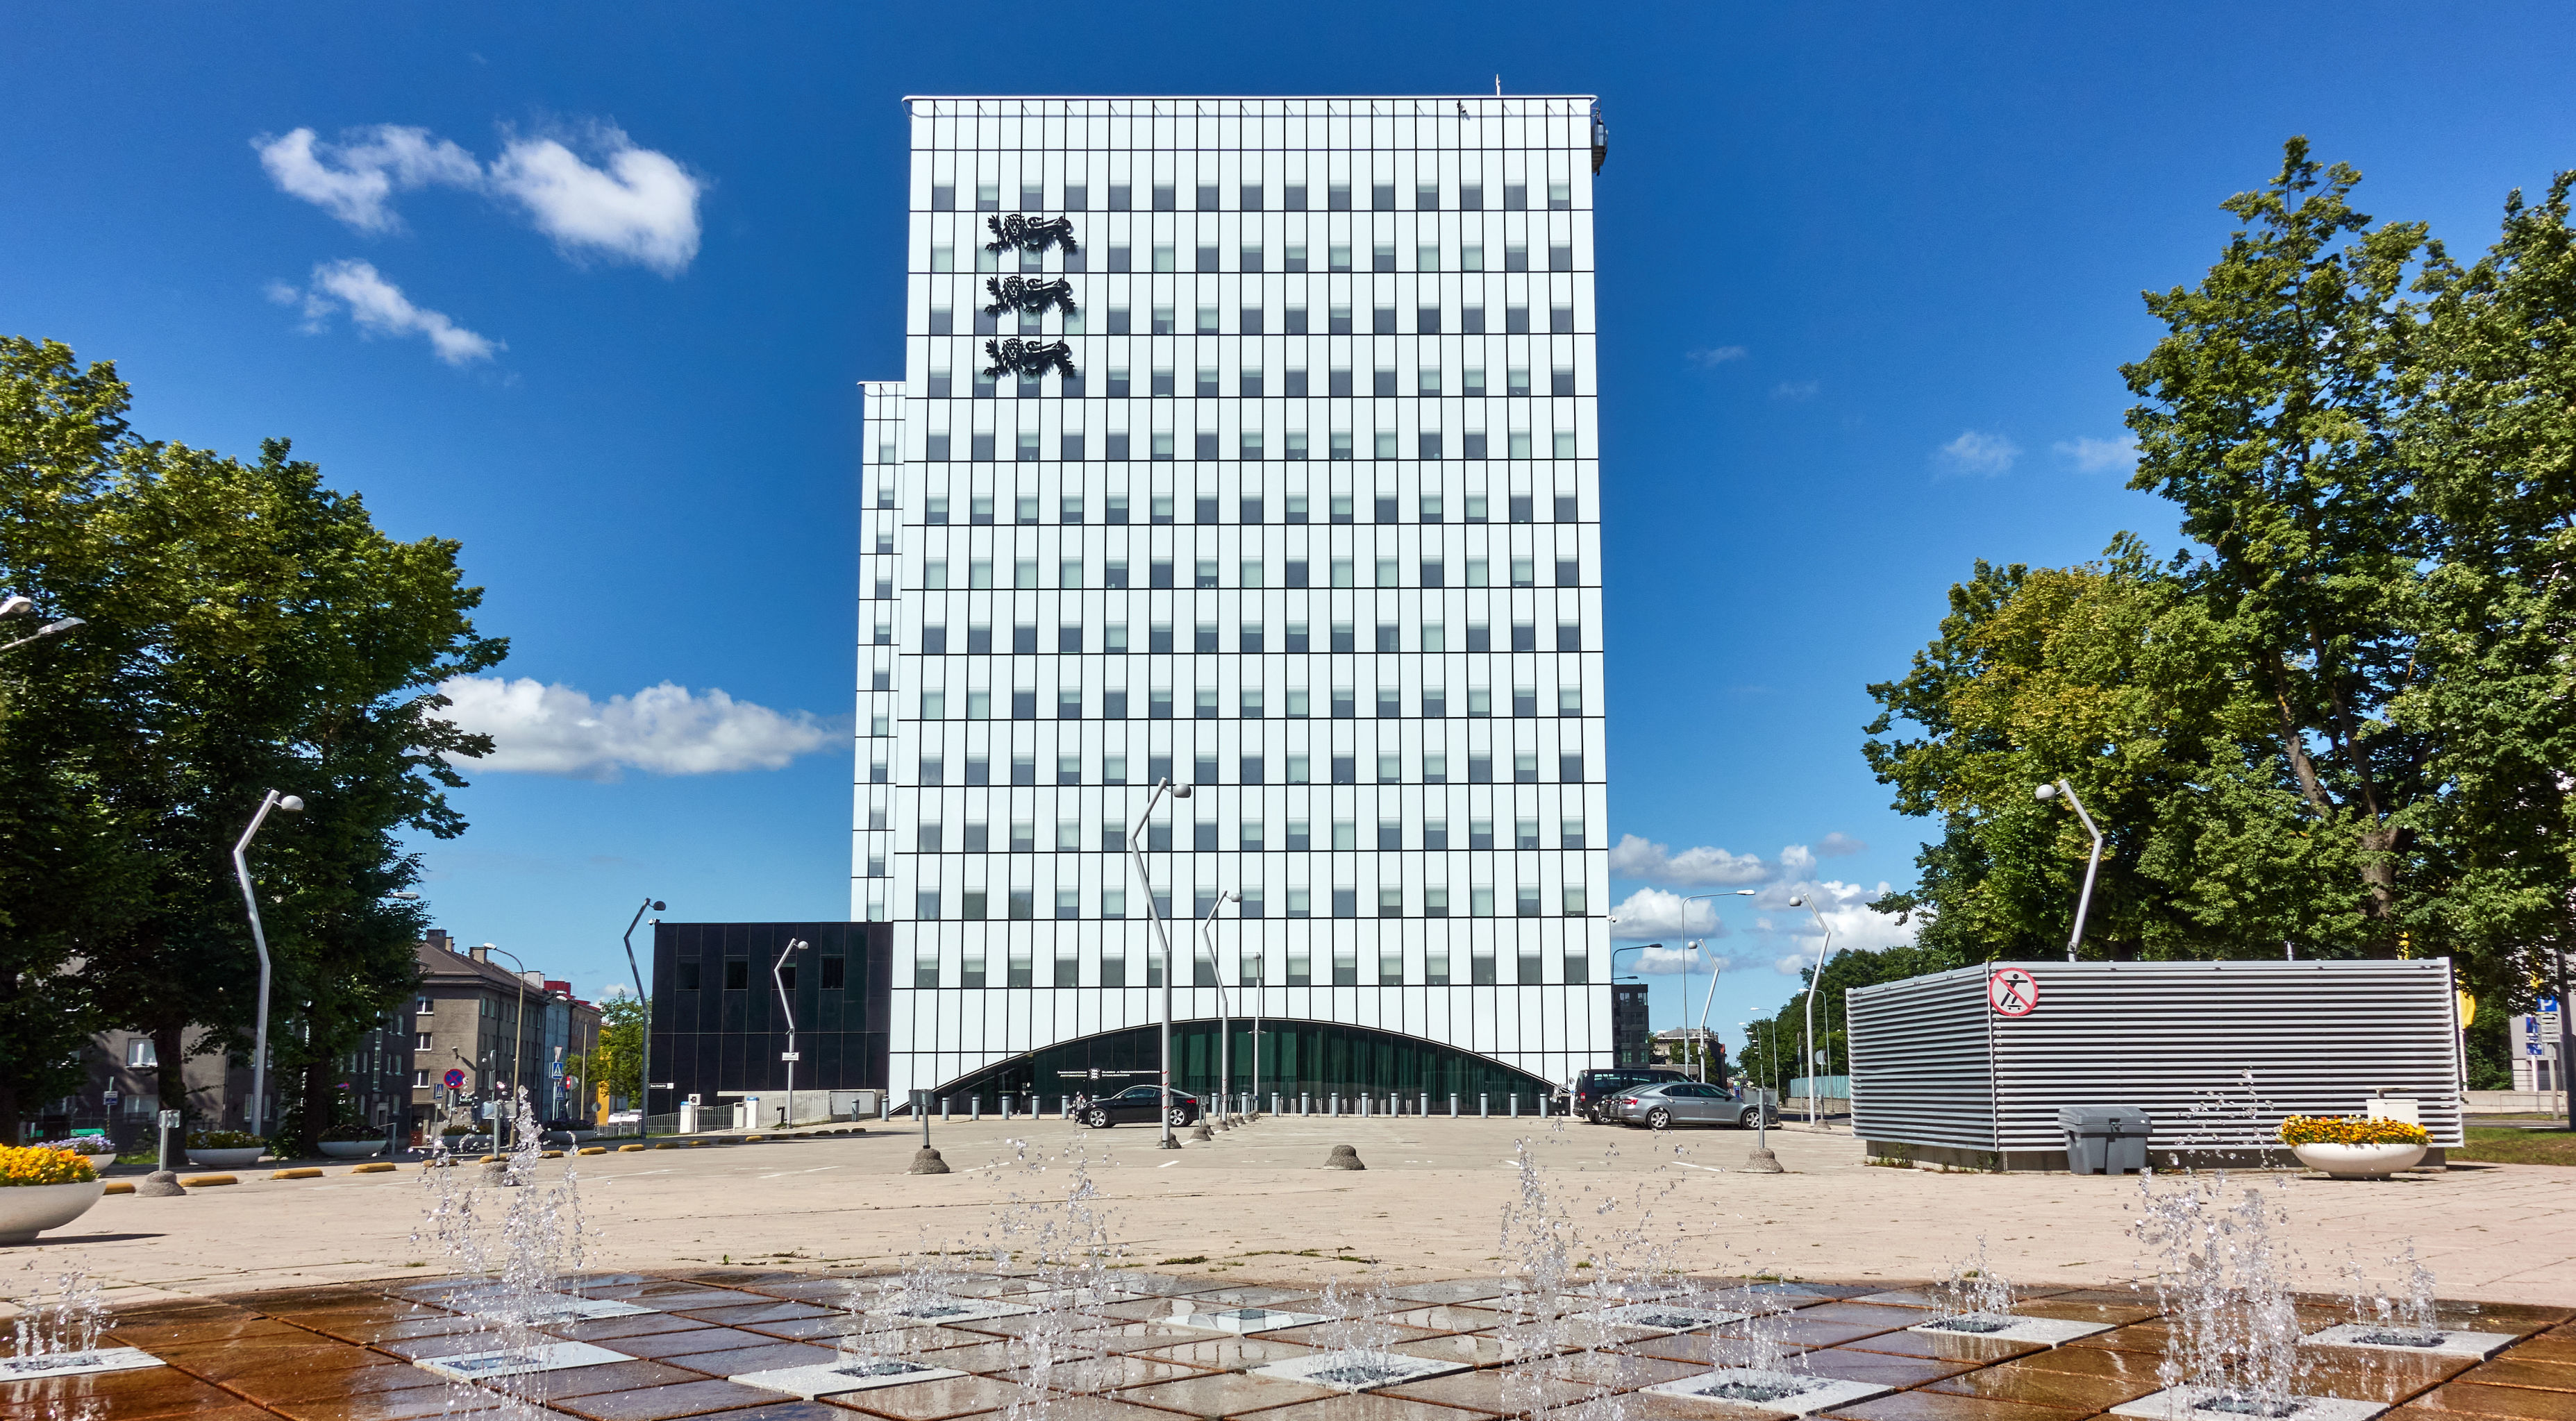 Здание Суперминистерства в Таллине